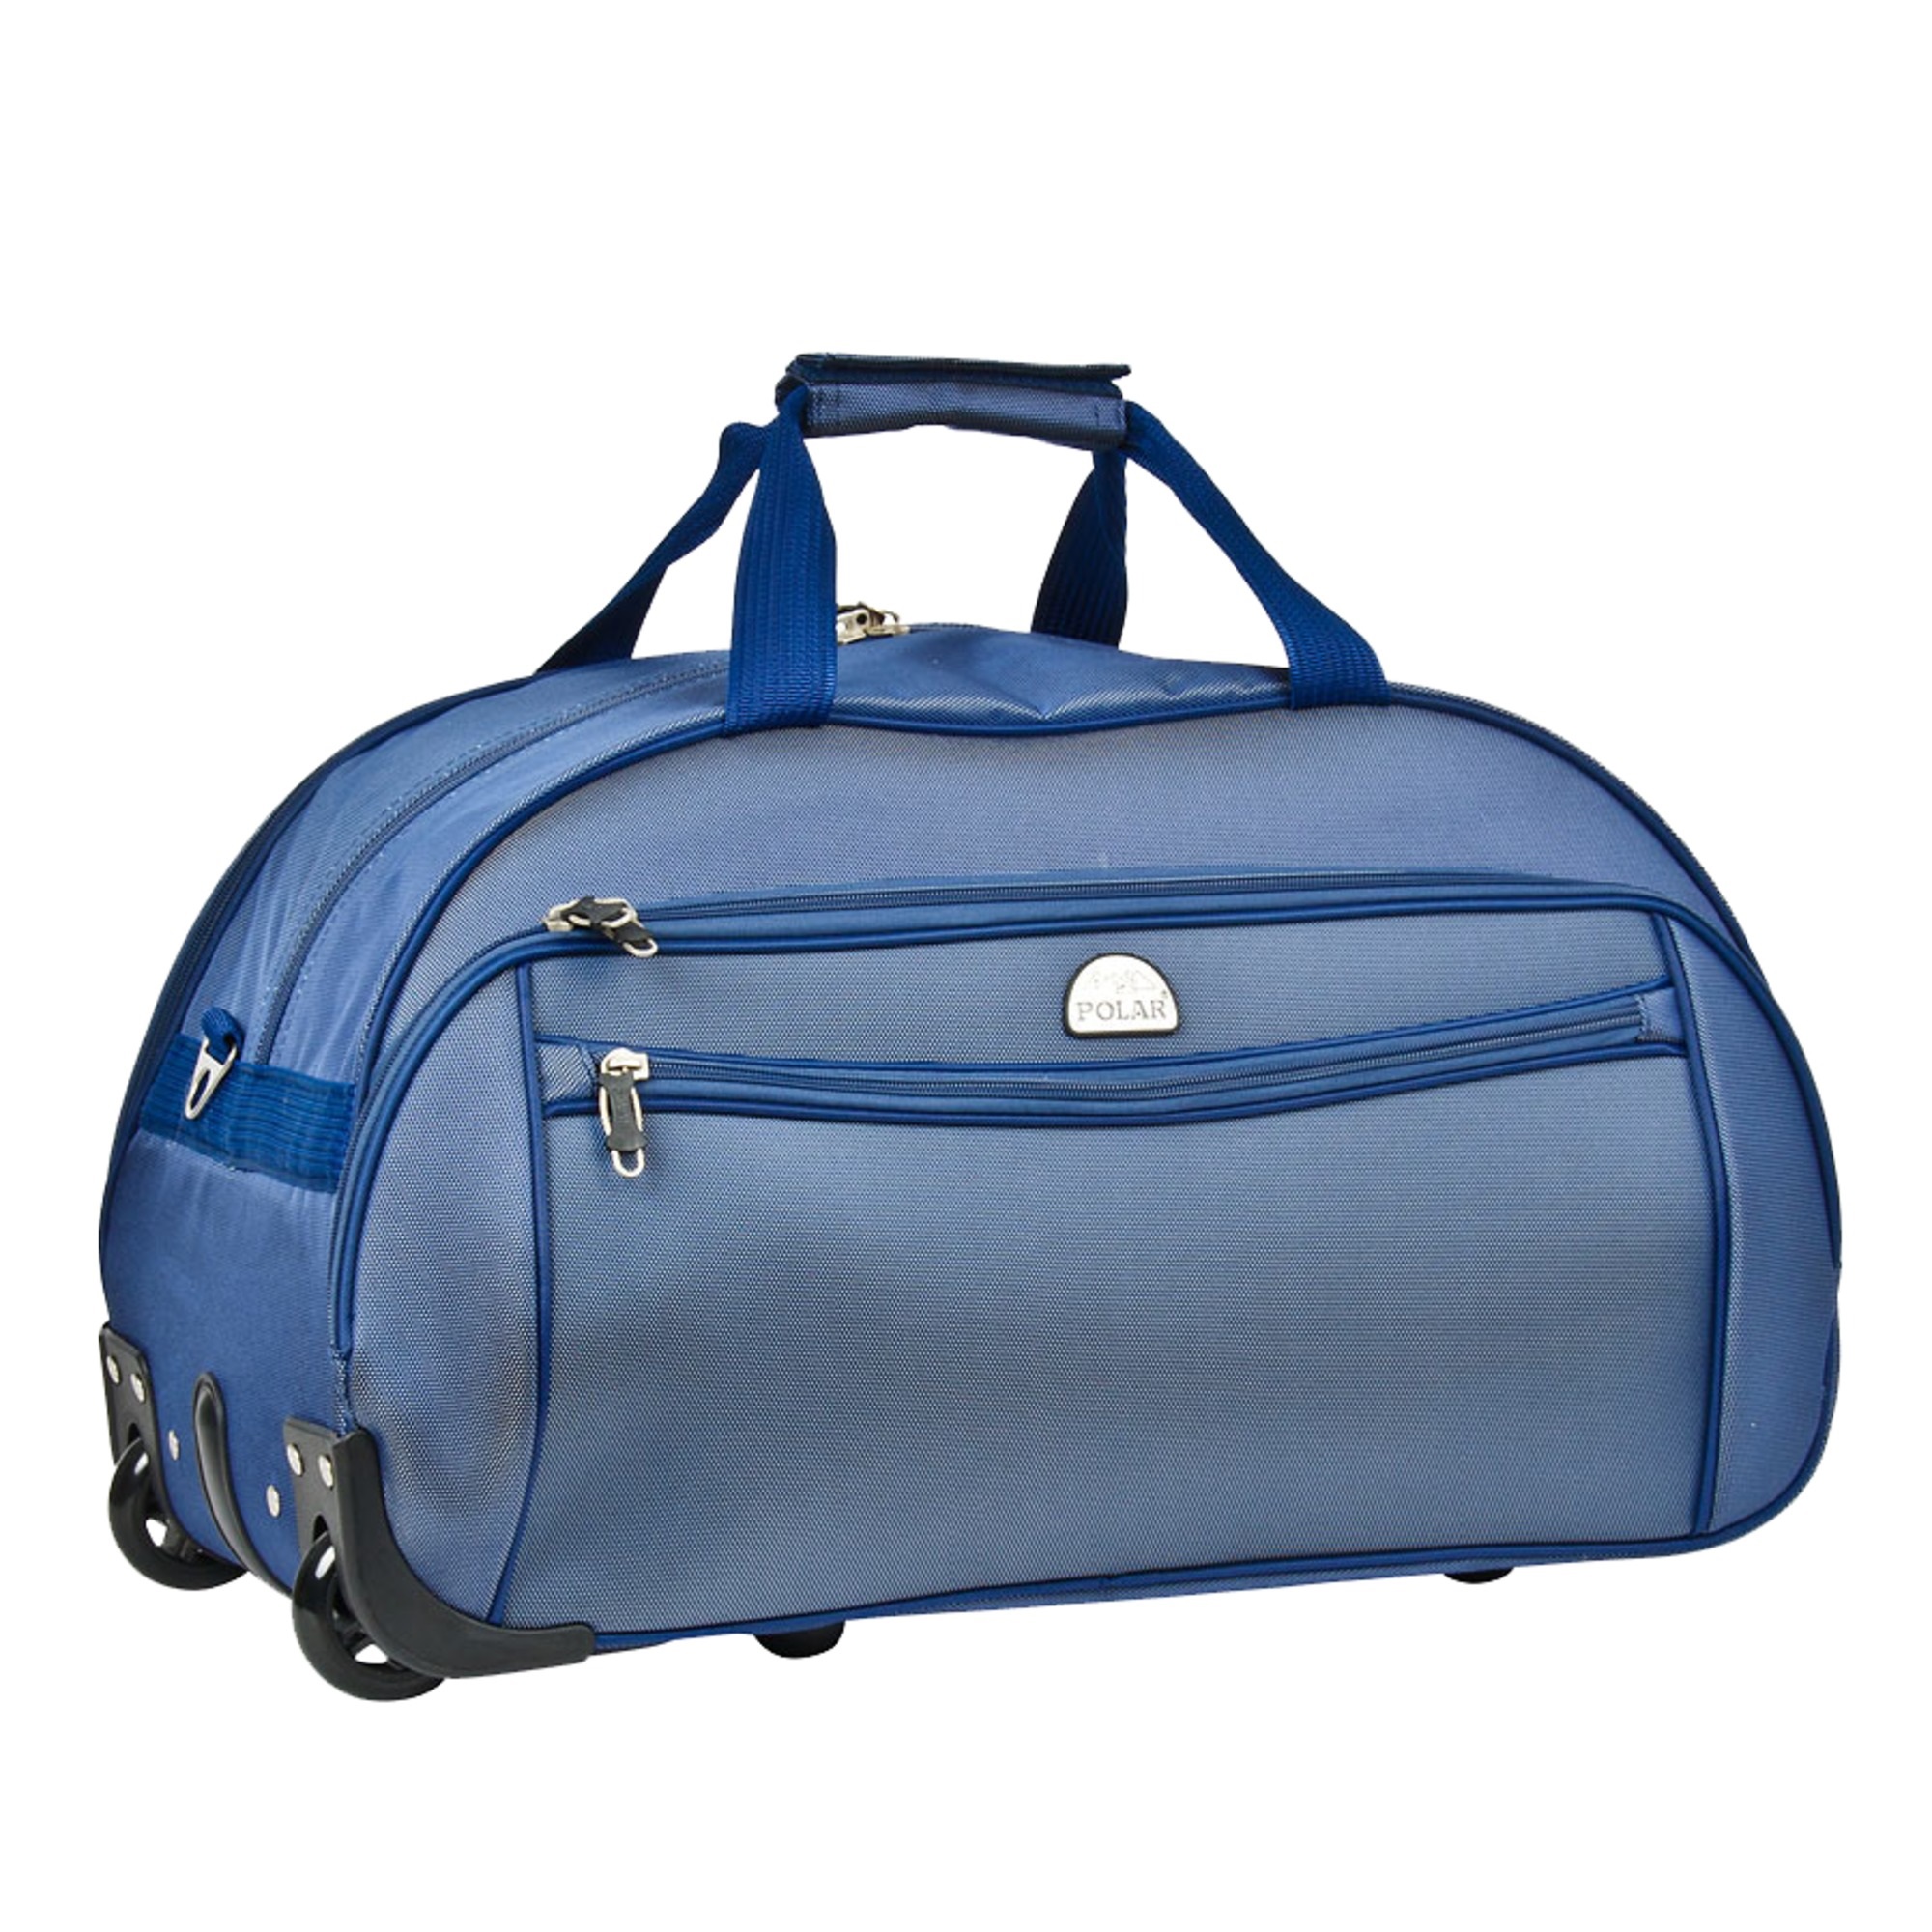 Дорожная сумка Polar Регата blue 30 x 34 x 58 см